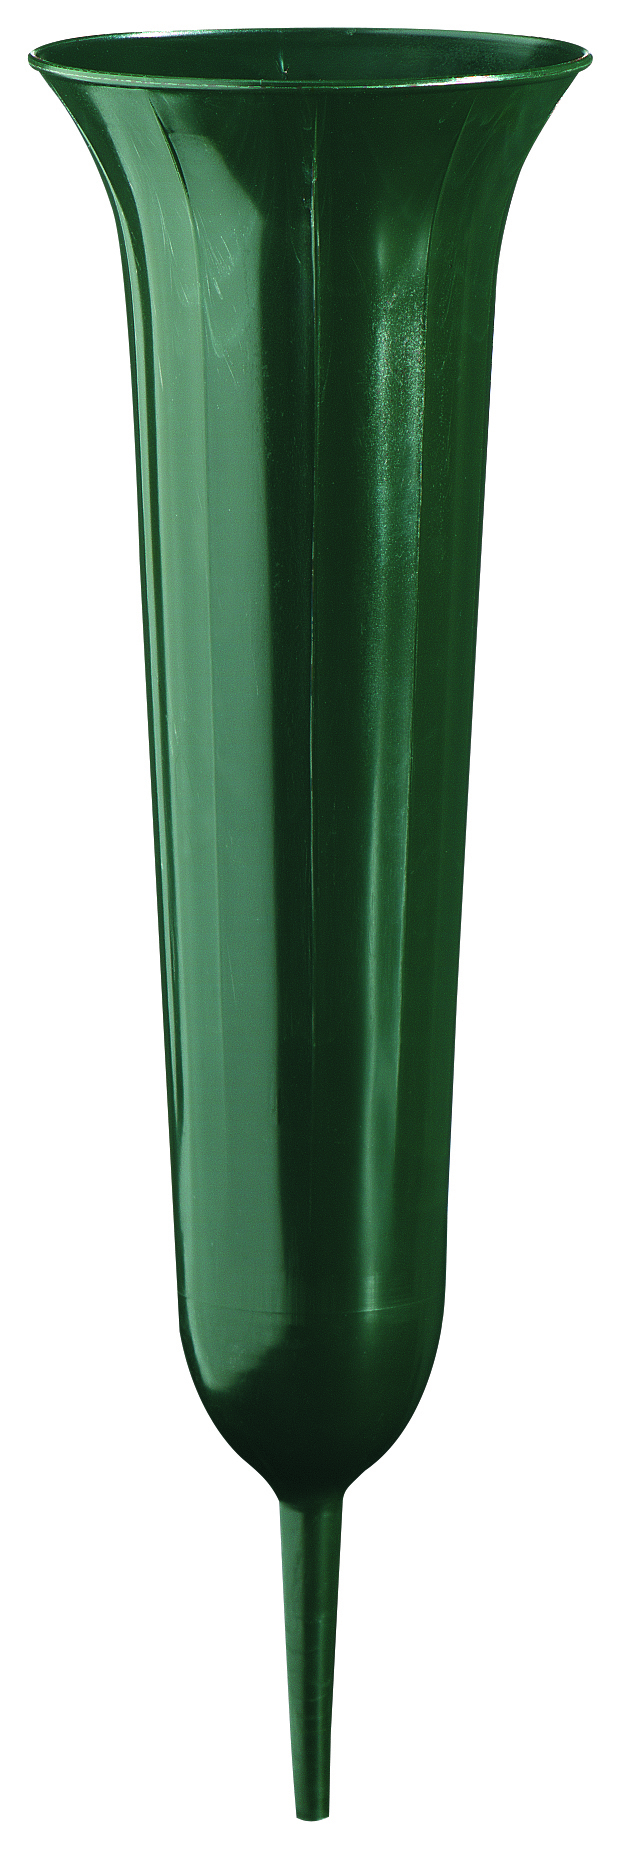 Geli Grabvase 42 cm dunkelgrün